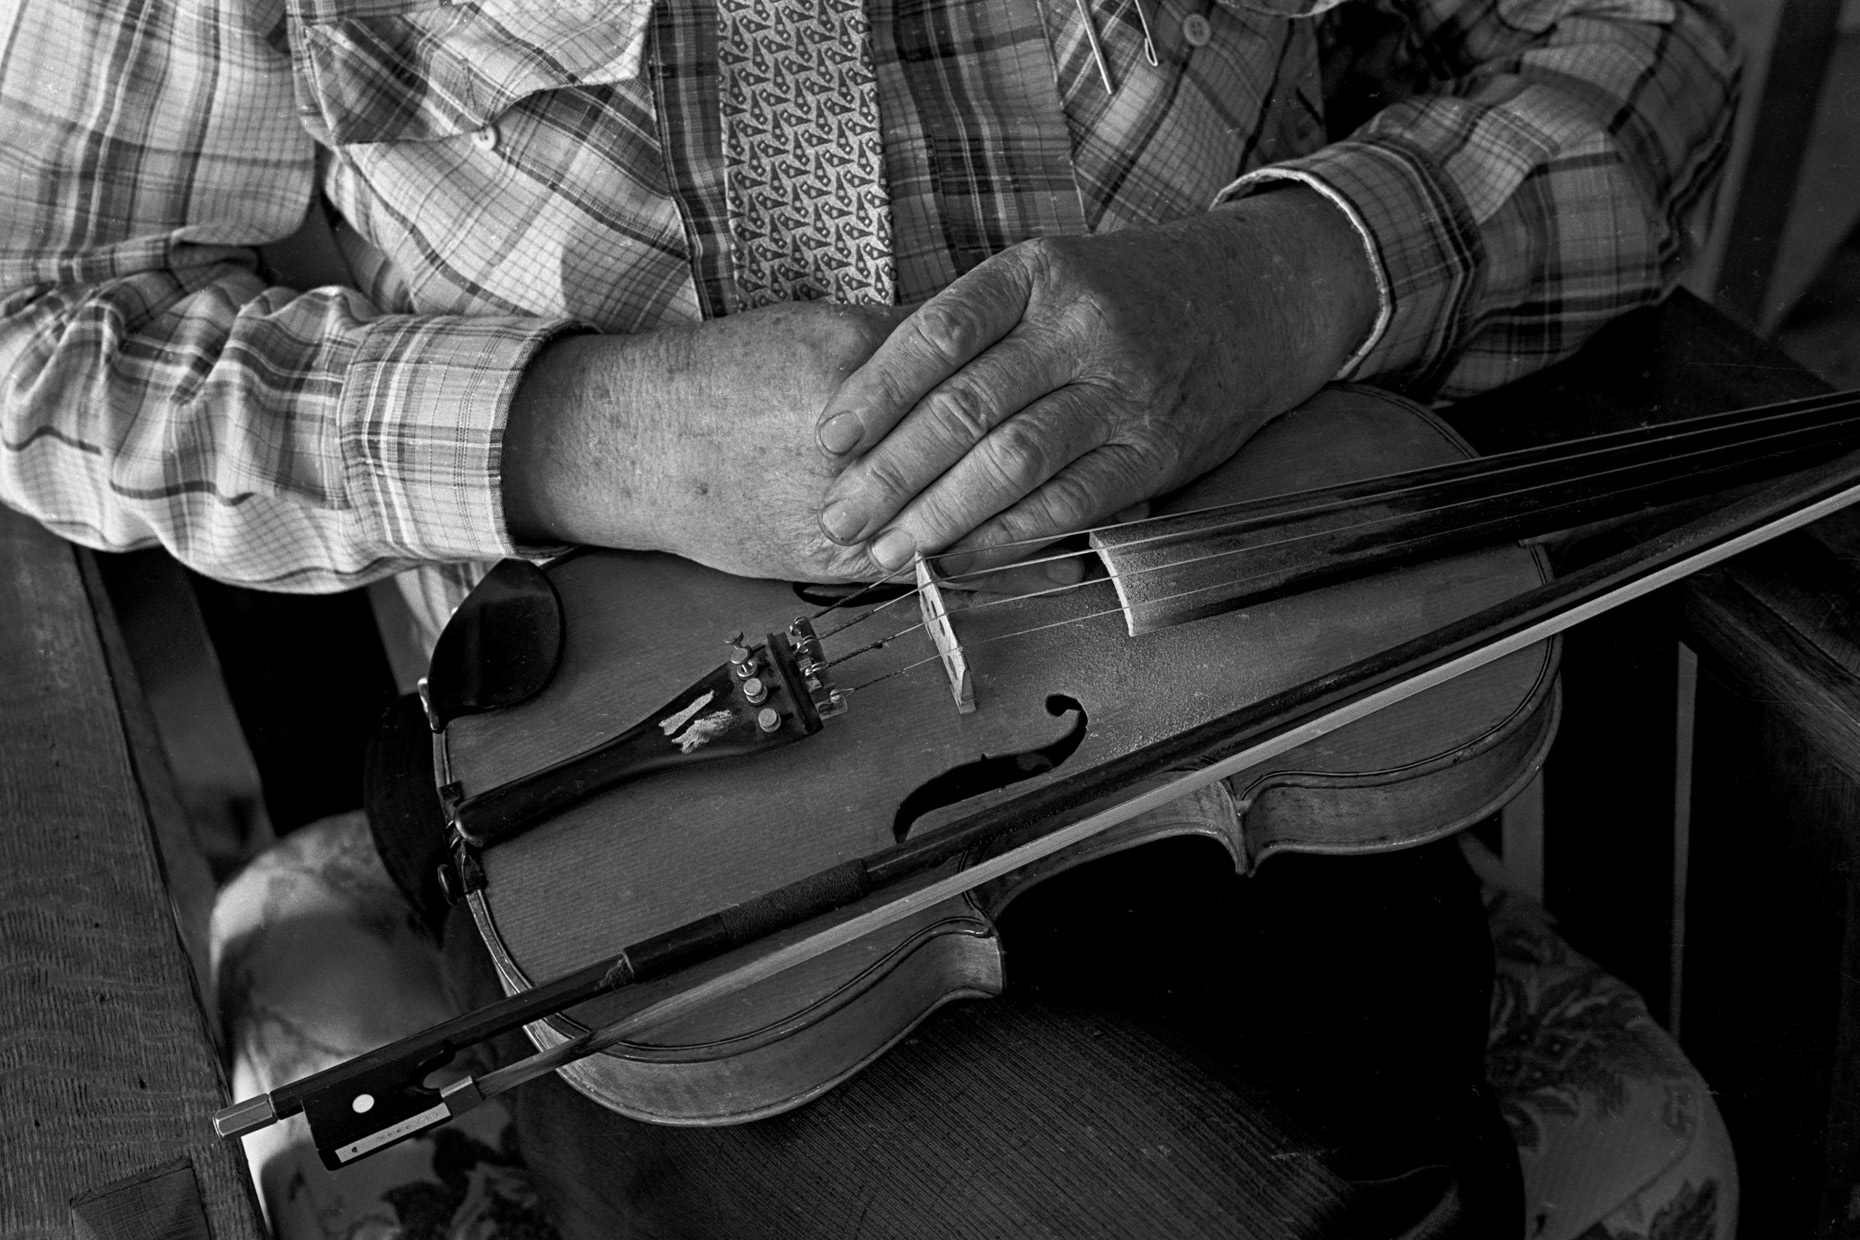 Tony Thomas violin maker in Hugo, OK by Kevin Brown